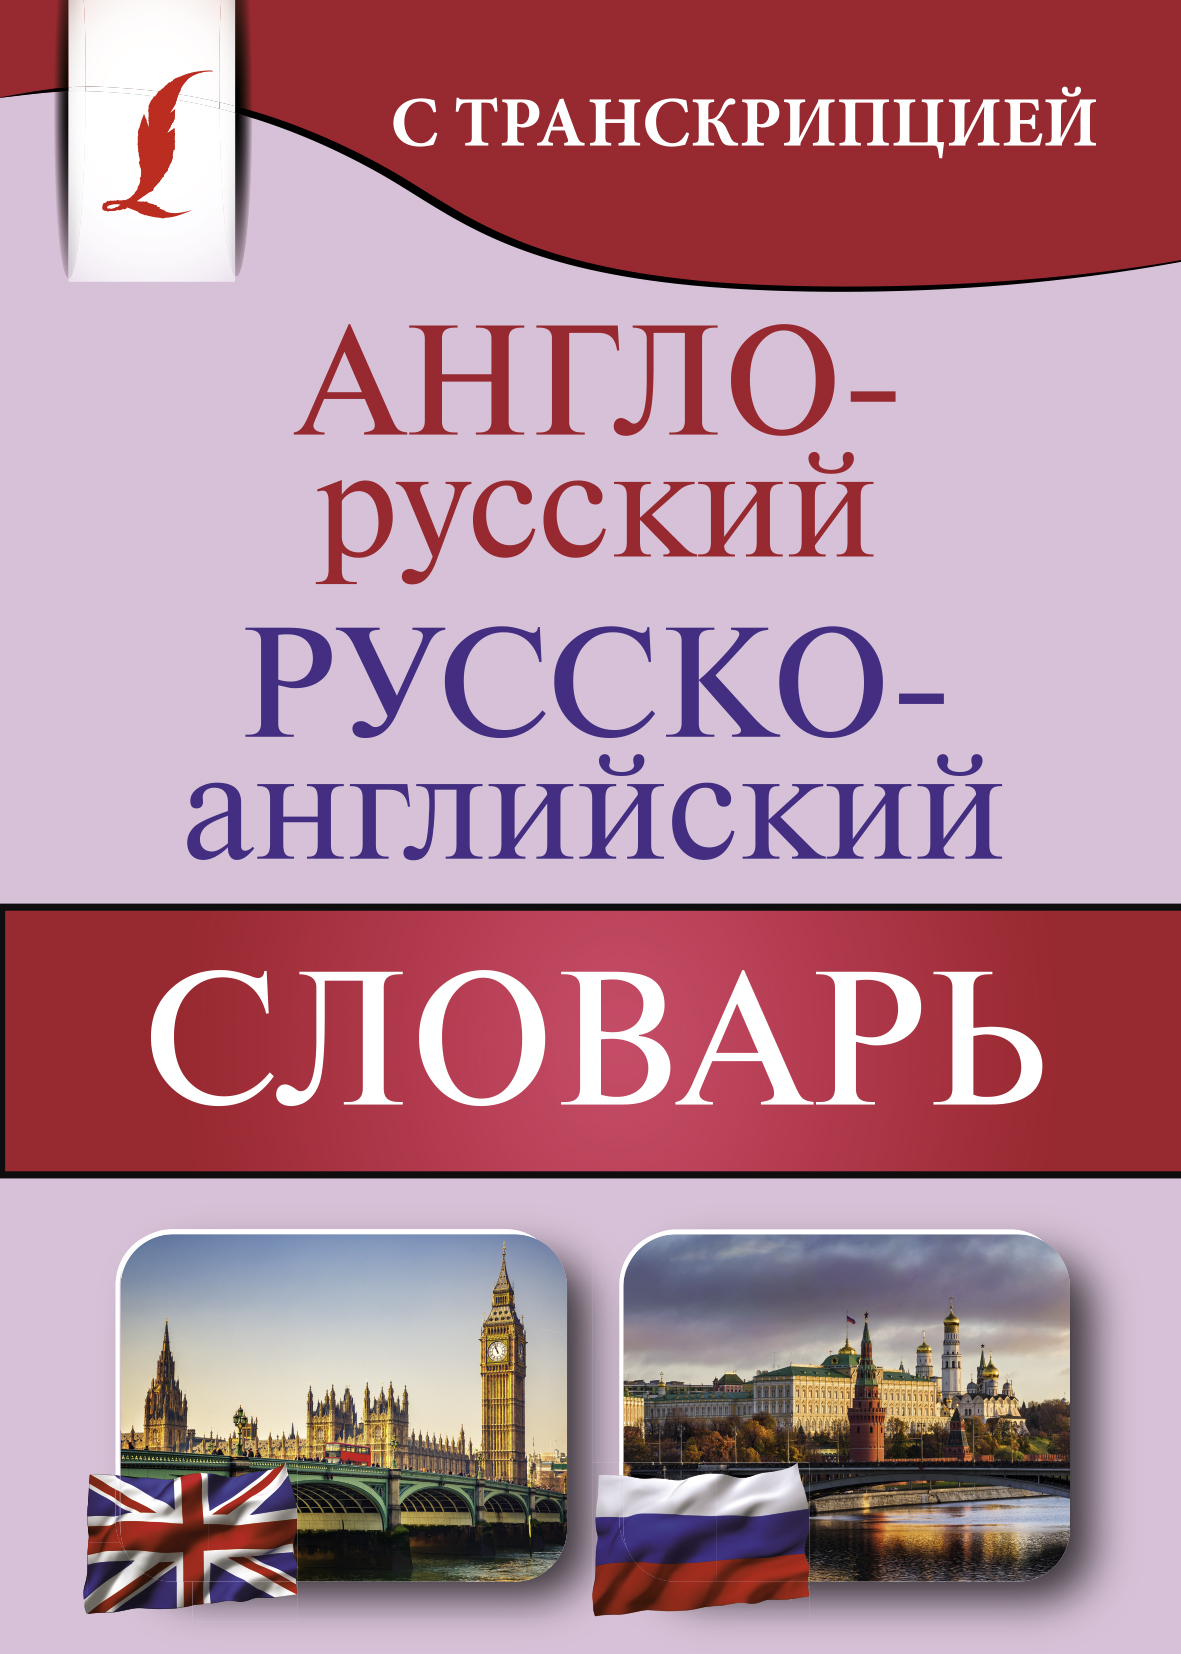 Англо-русский русско-английский словарь с транскрипцией 